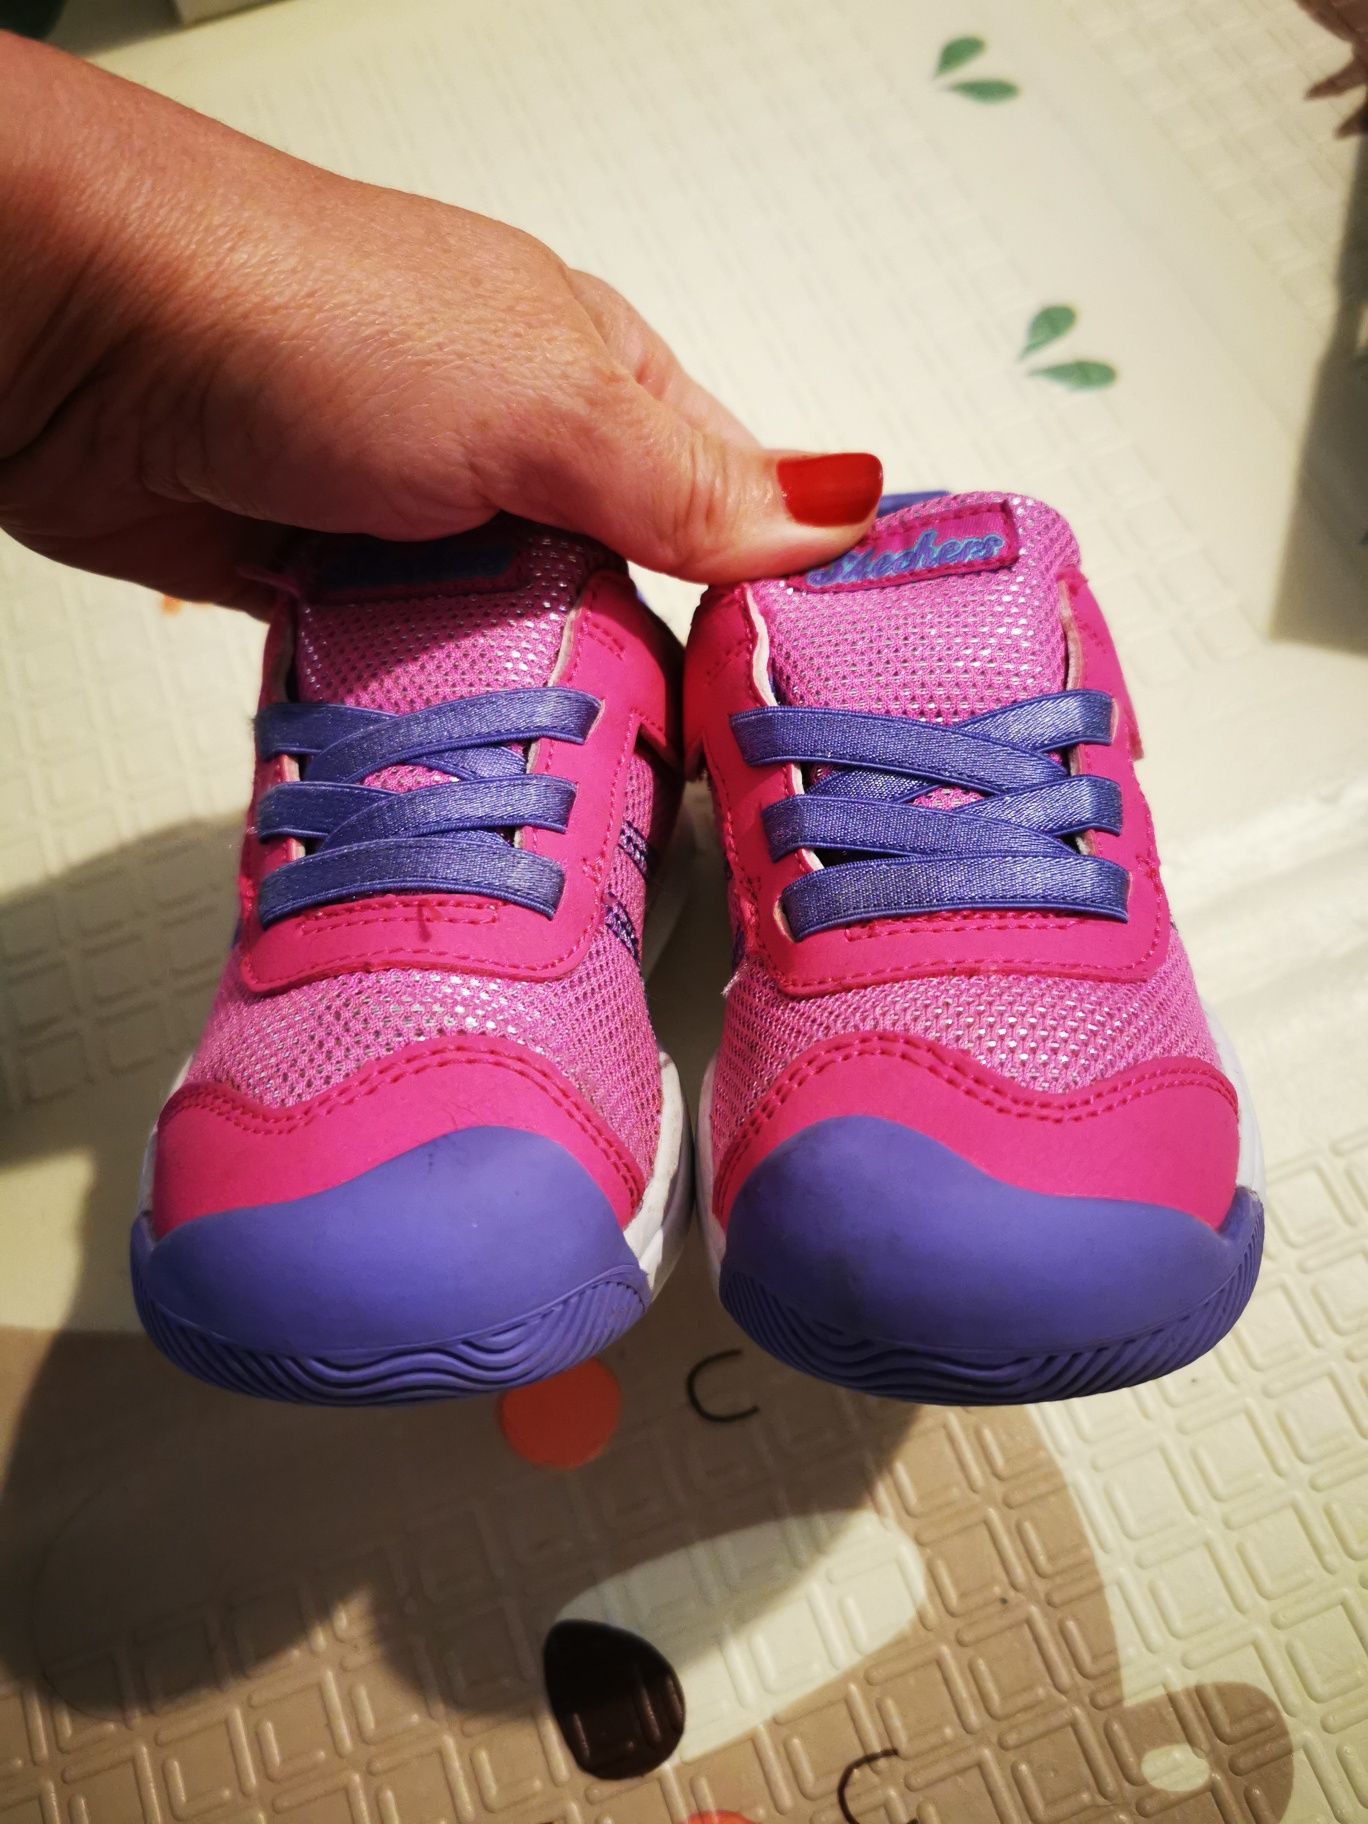 Adidasi Skechers copii, fete mărimea 26, aprox 17.5 cm